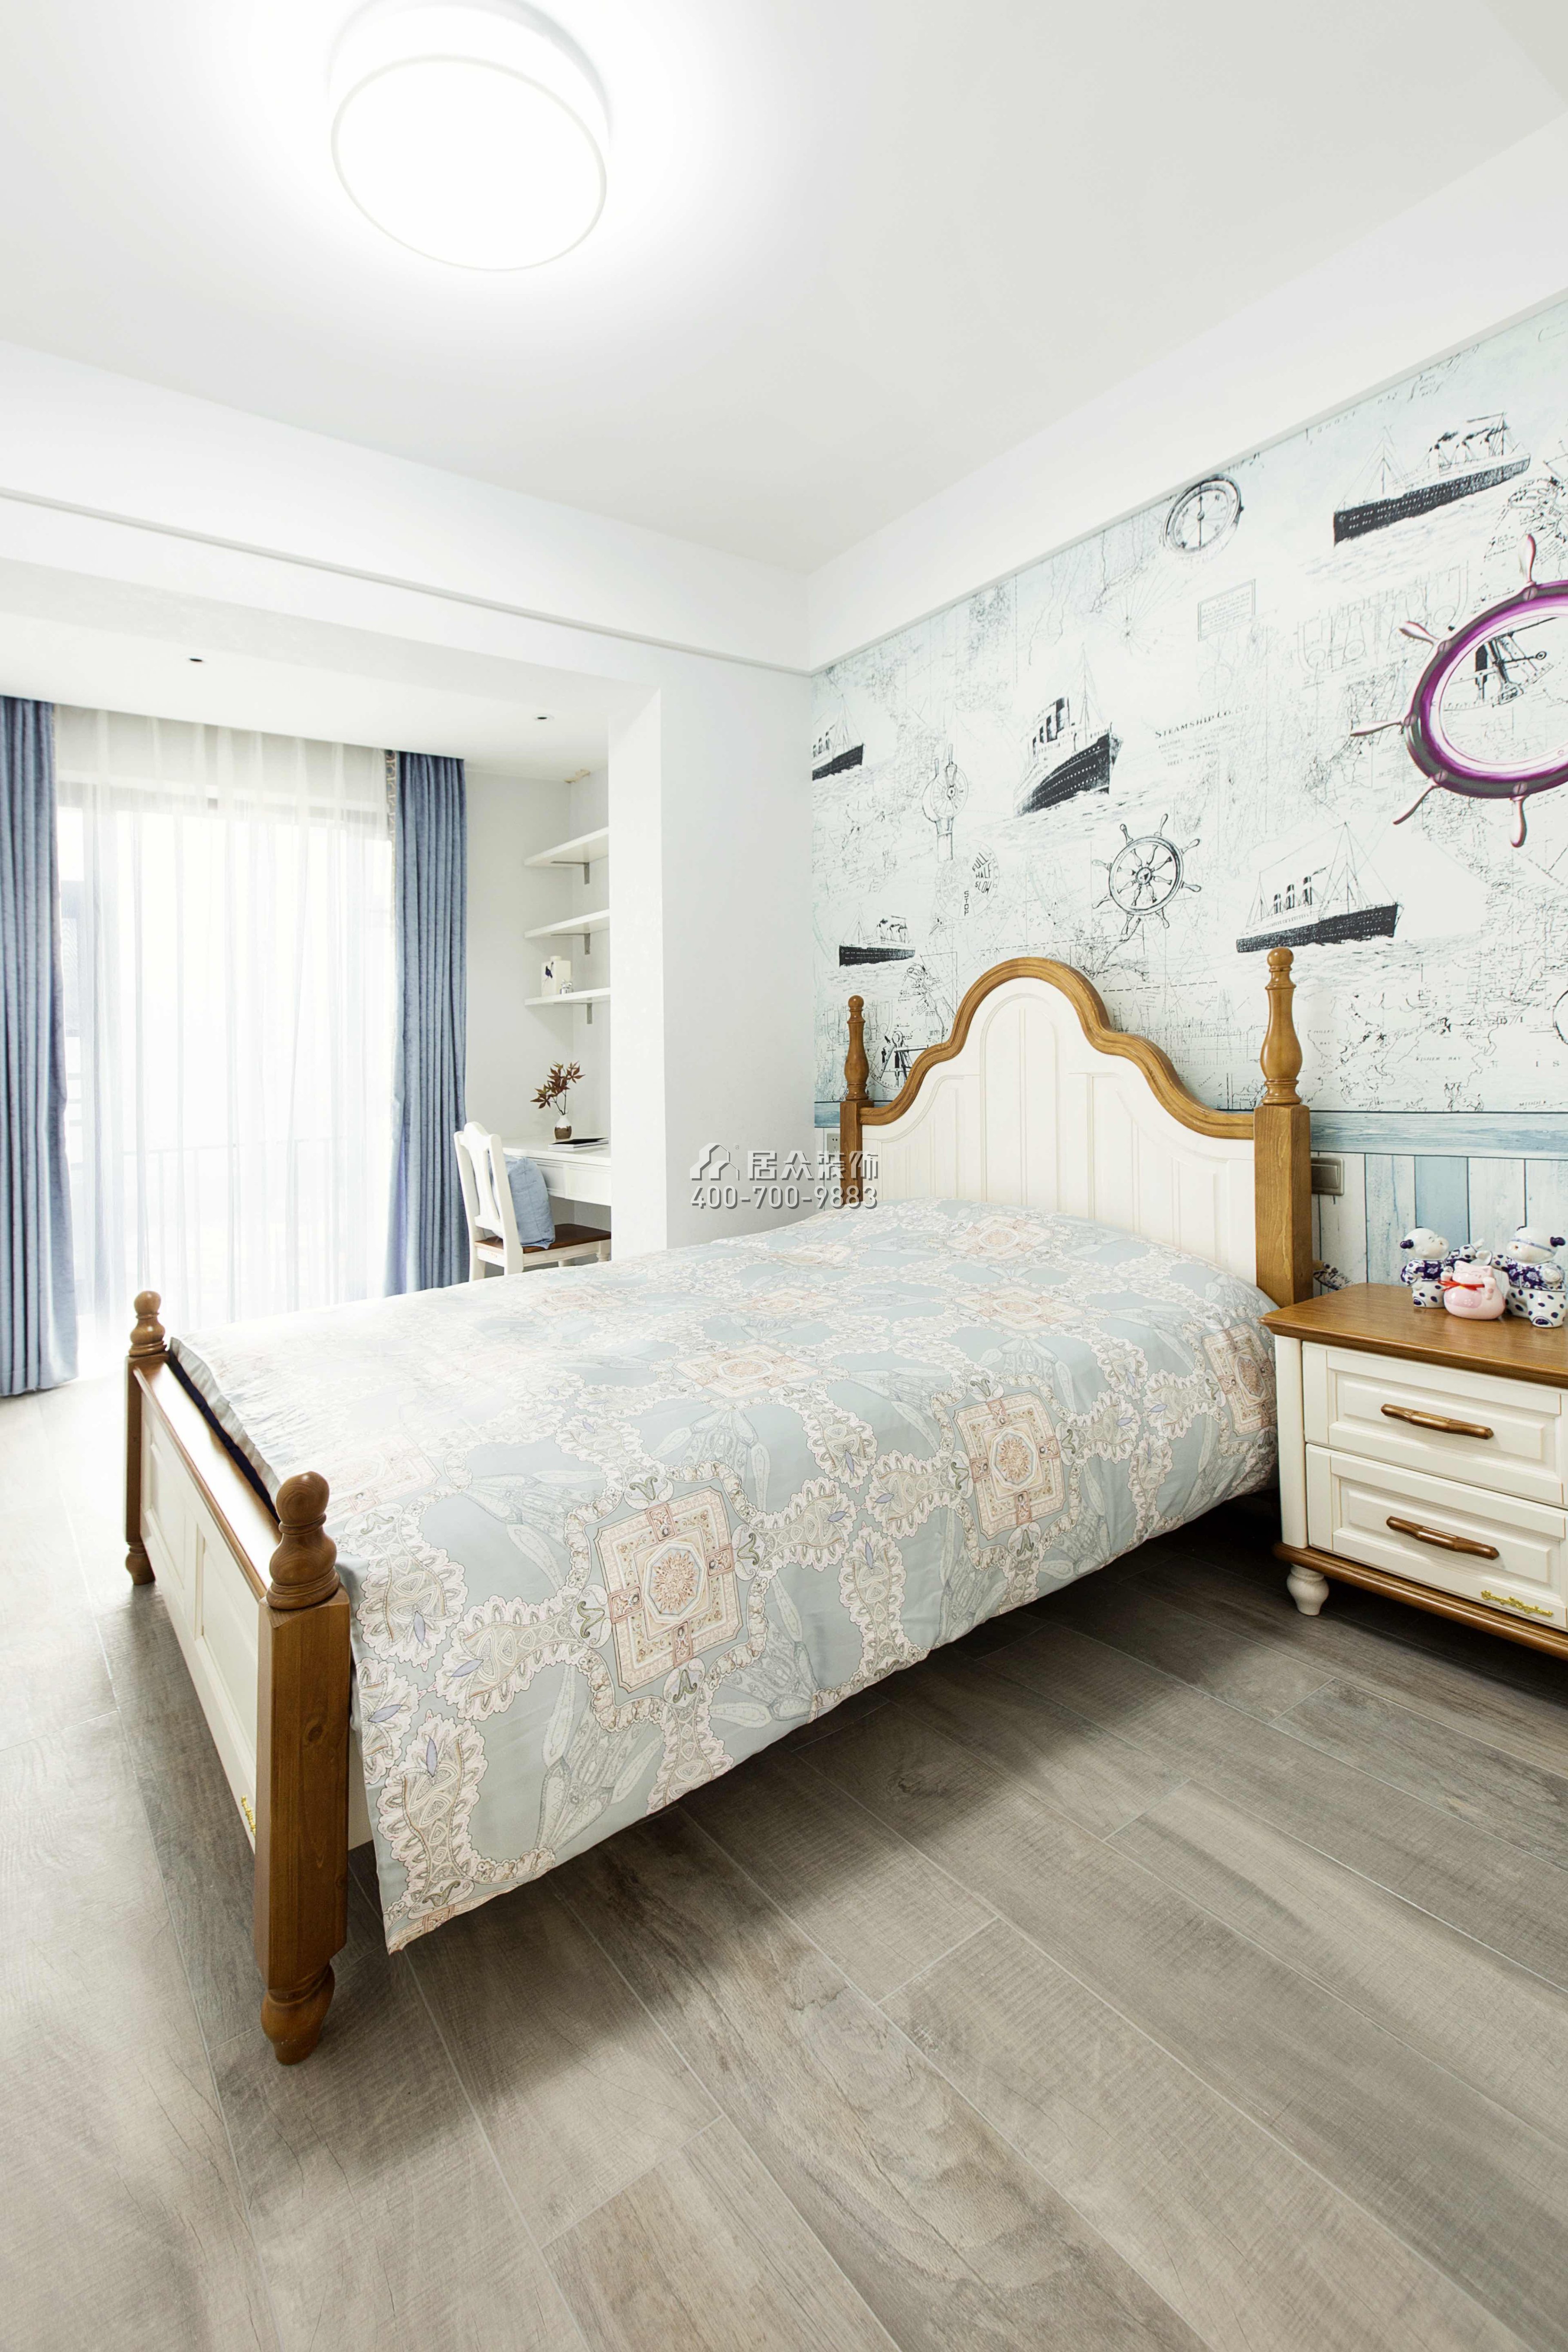 承翰陶柏莉140平方米中式風格平層戶型臥室裝修效果圖